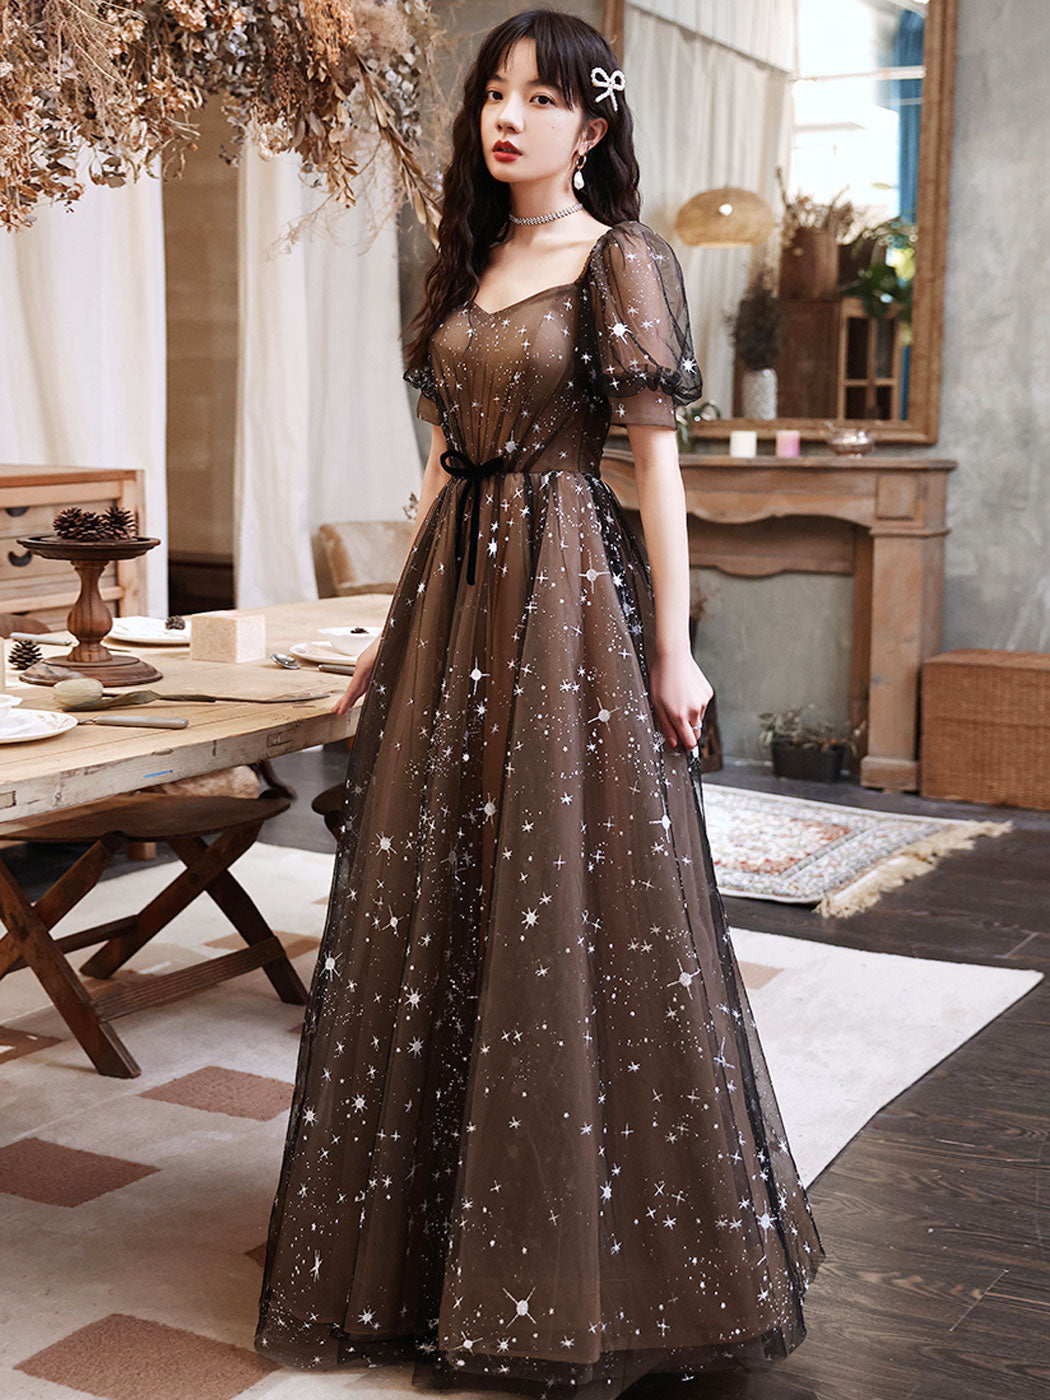 Brie Gown | Simple Long Sleeve Wedding Dress | Karen Willis Holmes